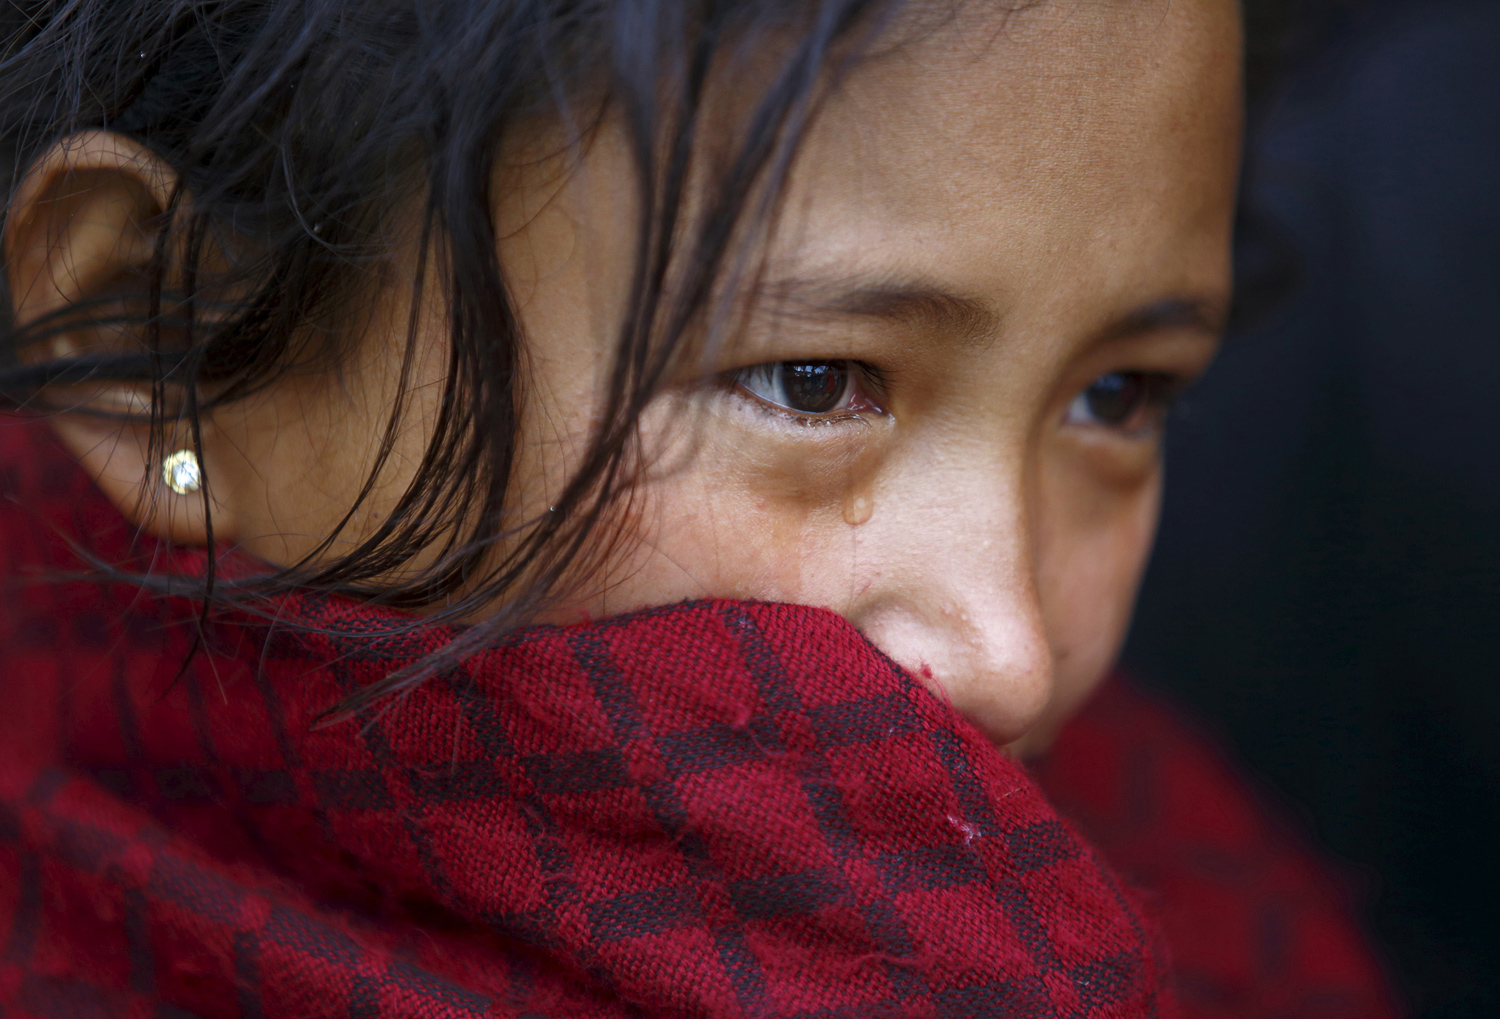 Φρίκη στο Νεπάλ: Νεαρή κλείστηκε σε καλύβα λόγω περιόδου και πέθανε